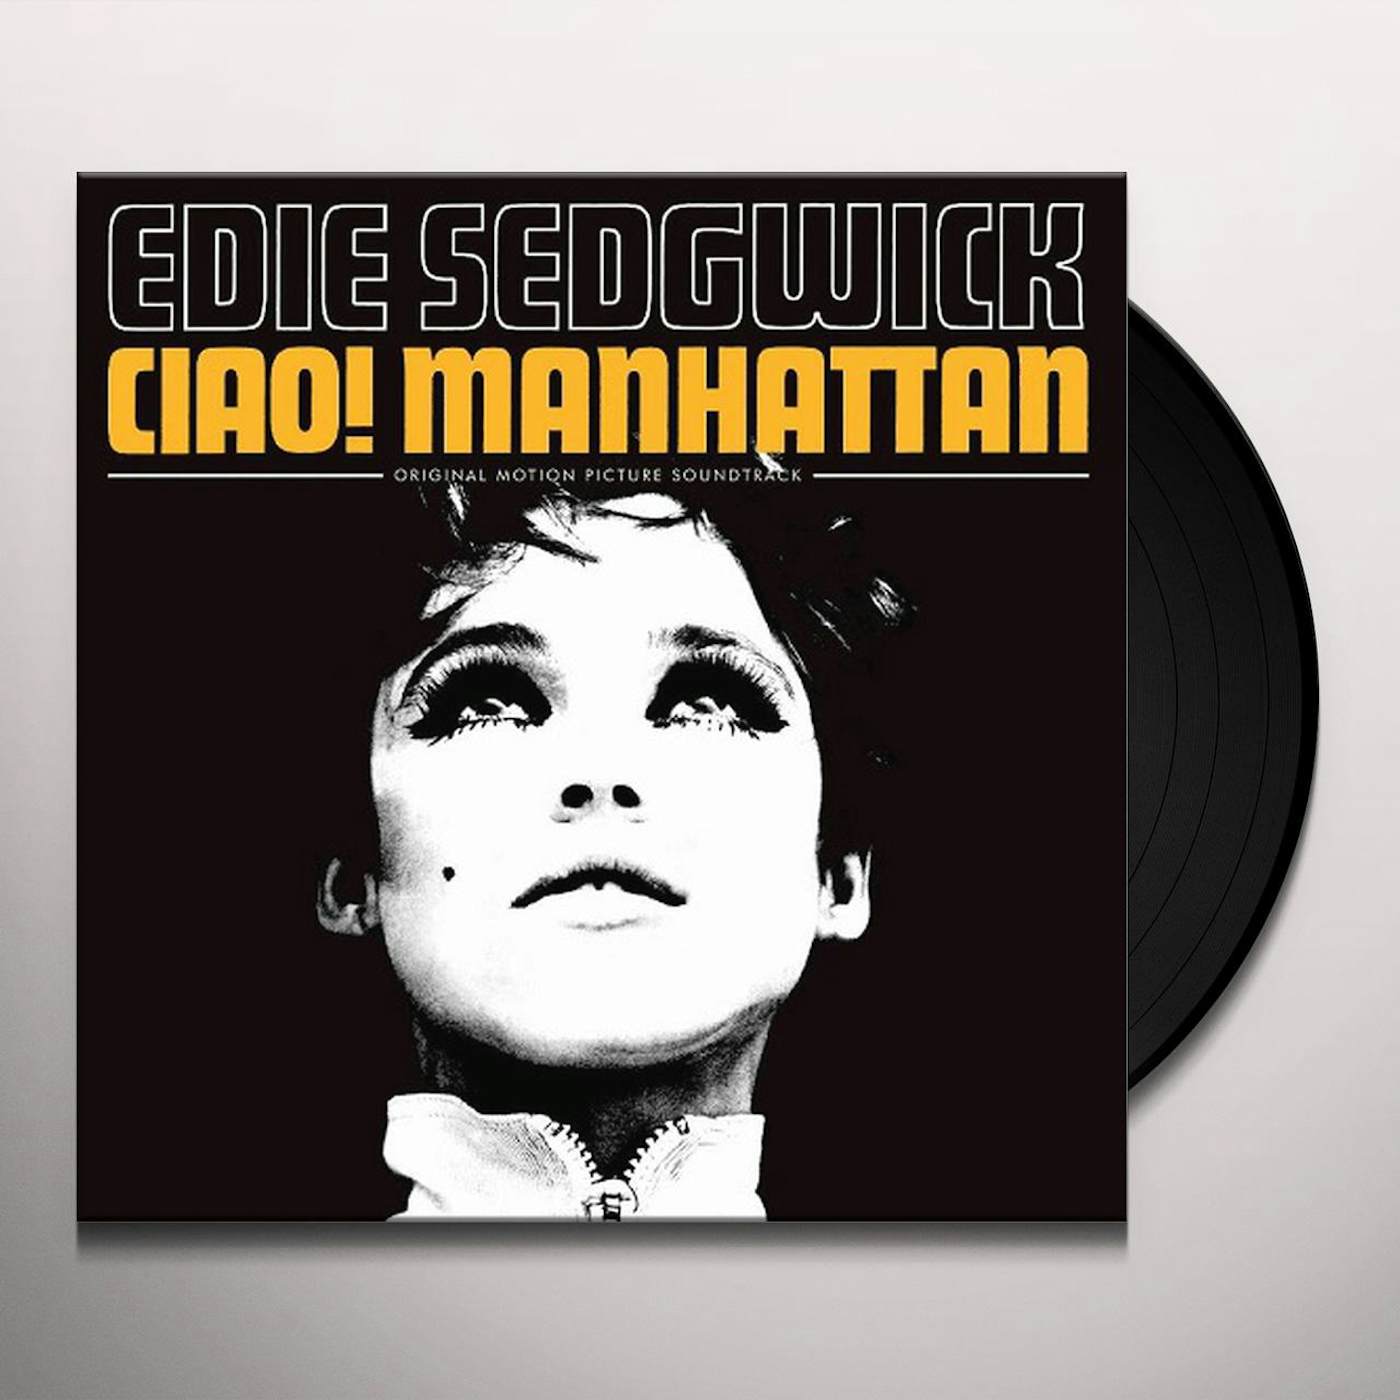 CIAO! MANHATTAN / Original Soundtrack Vinyl Record